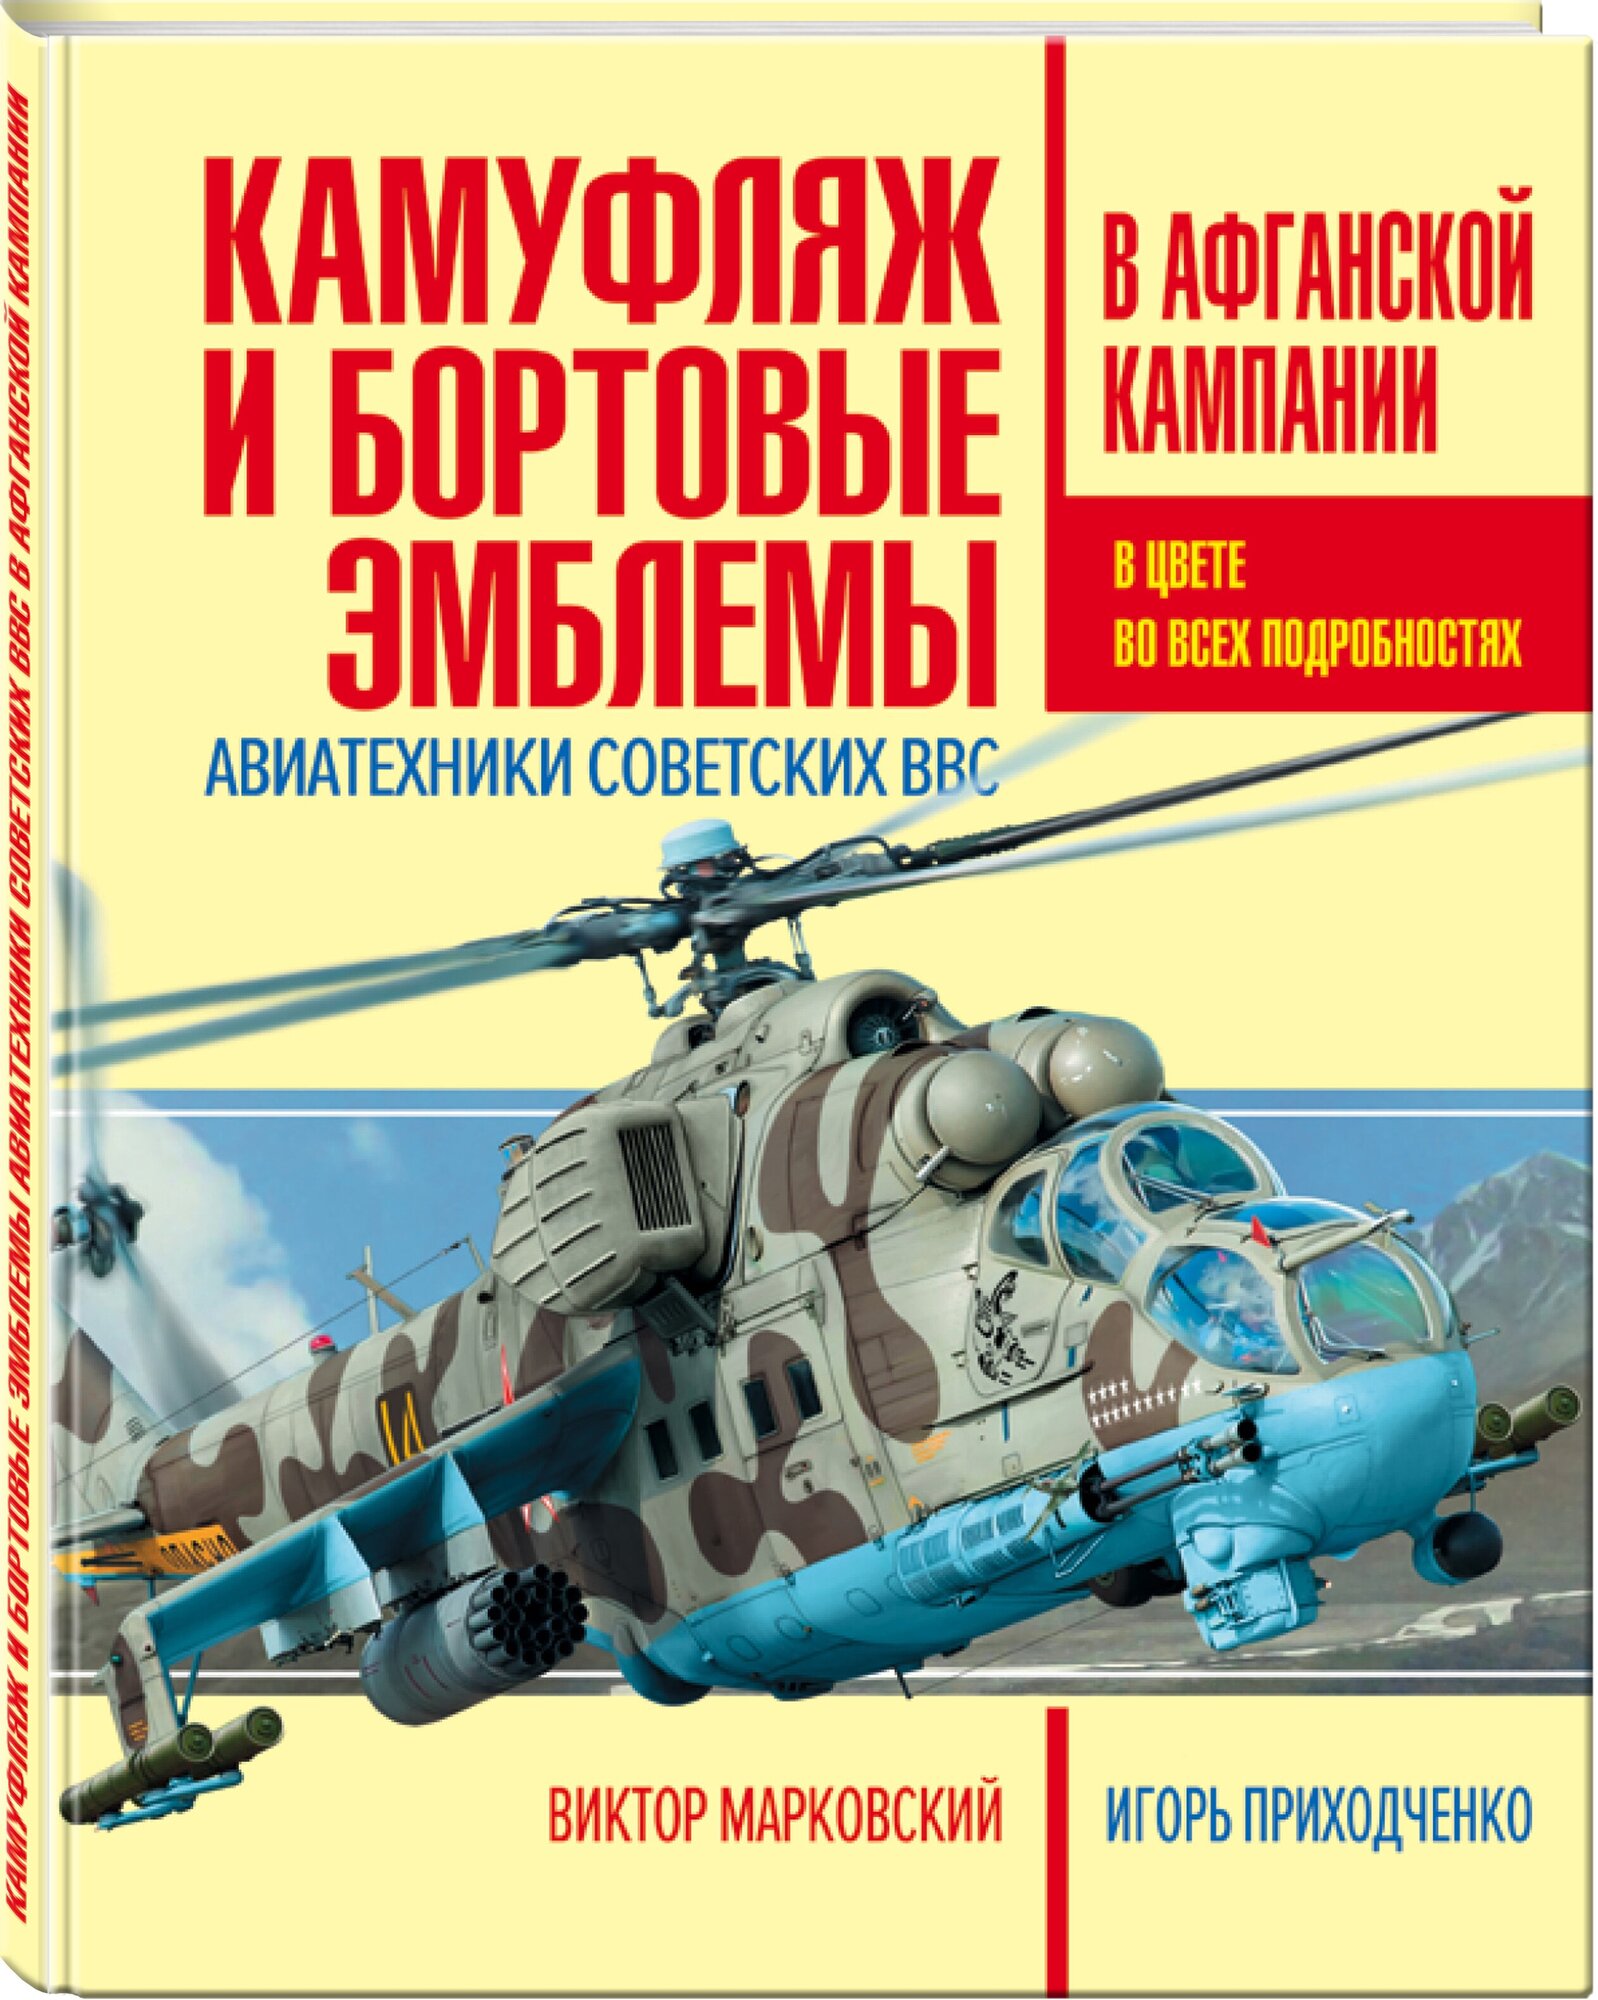 Камуфляж и бортовые эмблемы авиатехники советских ВВС в афганской кампании - фото №1